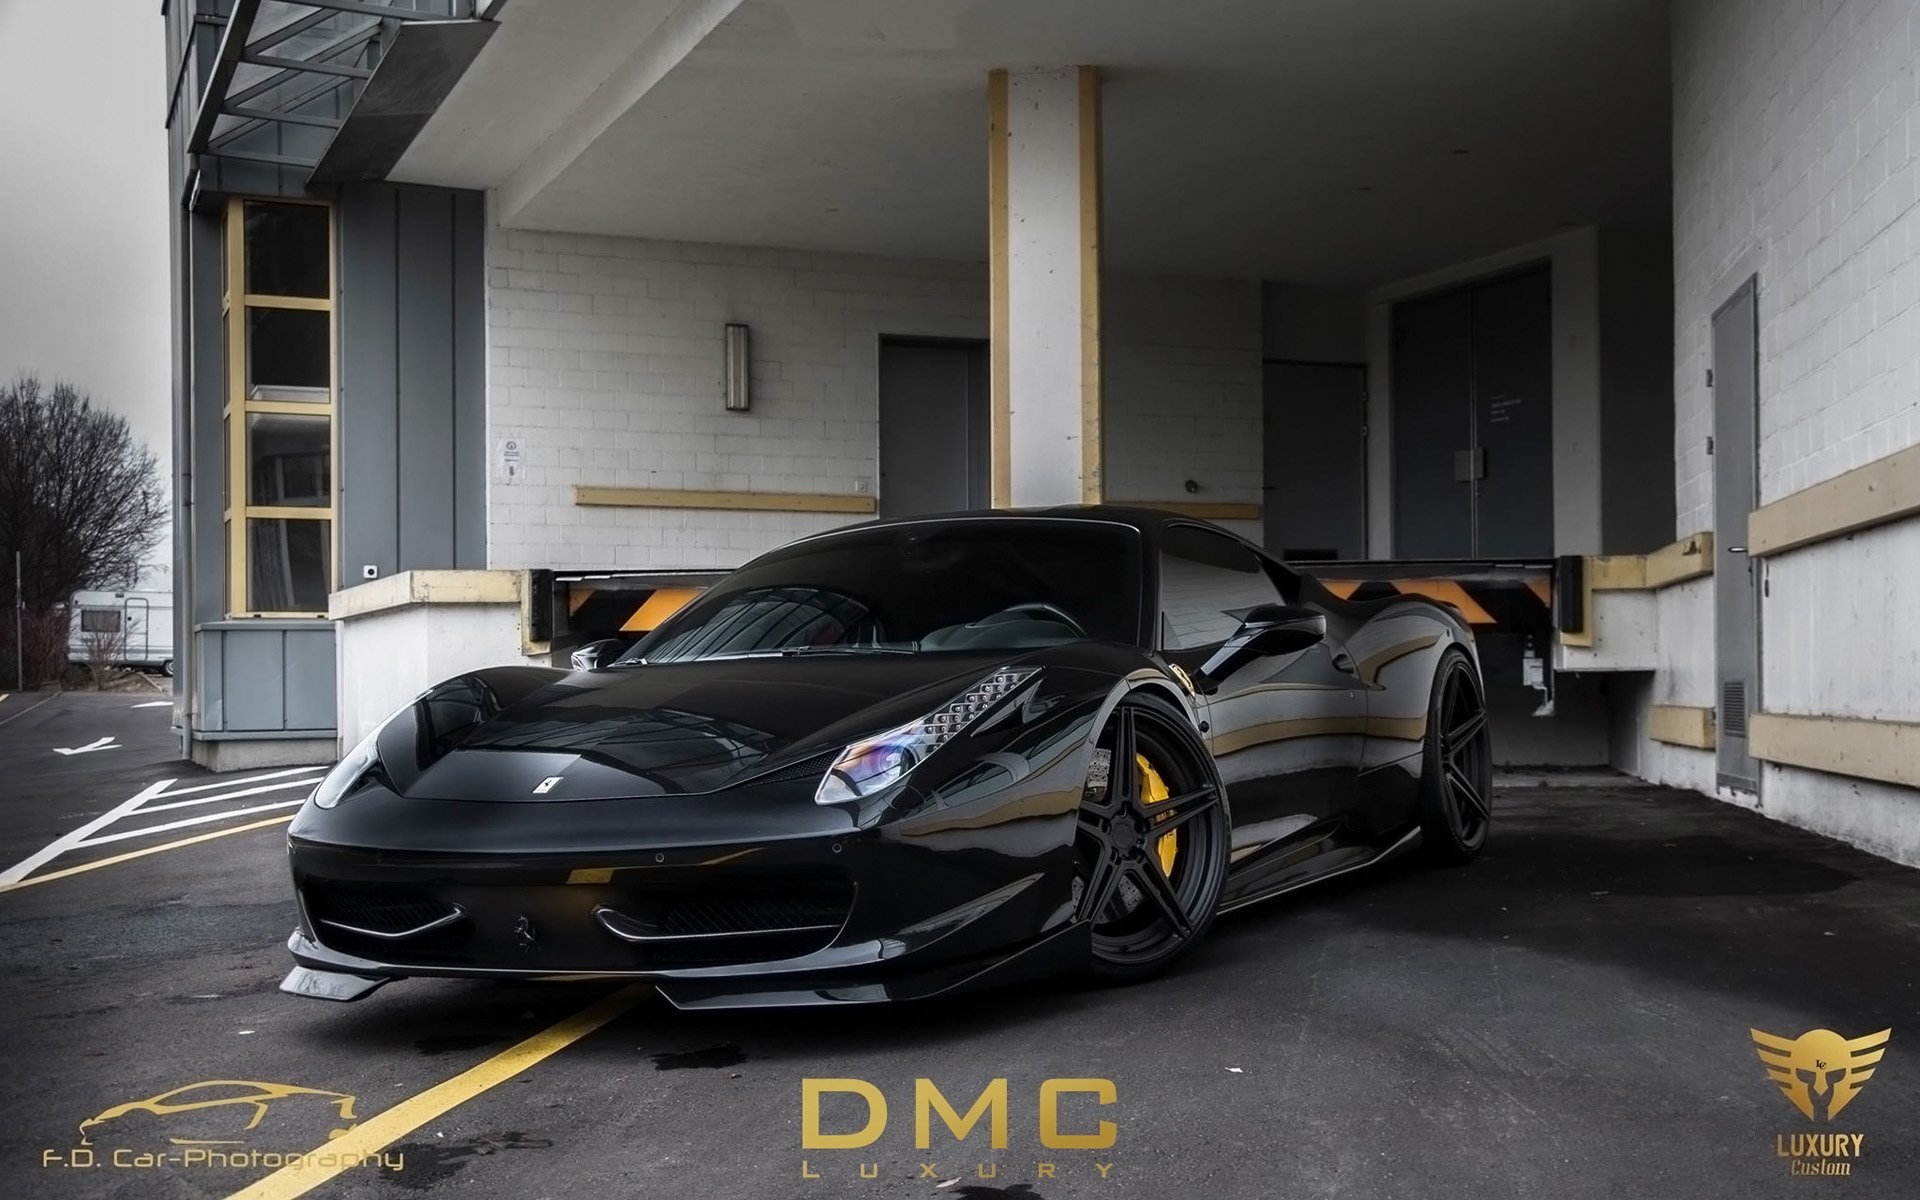 2014, Dmc, Ferrari, 458, Italia, Elegante, Supercar, Ew Wallpaper